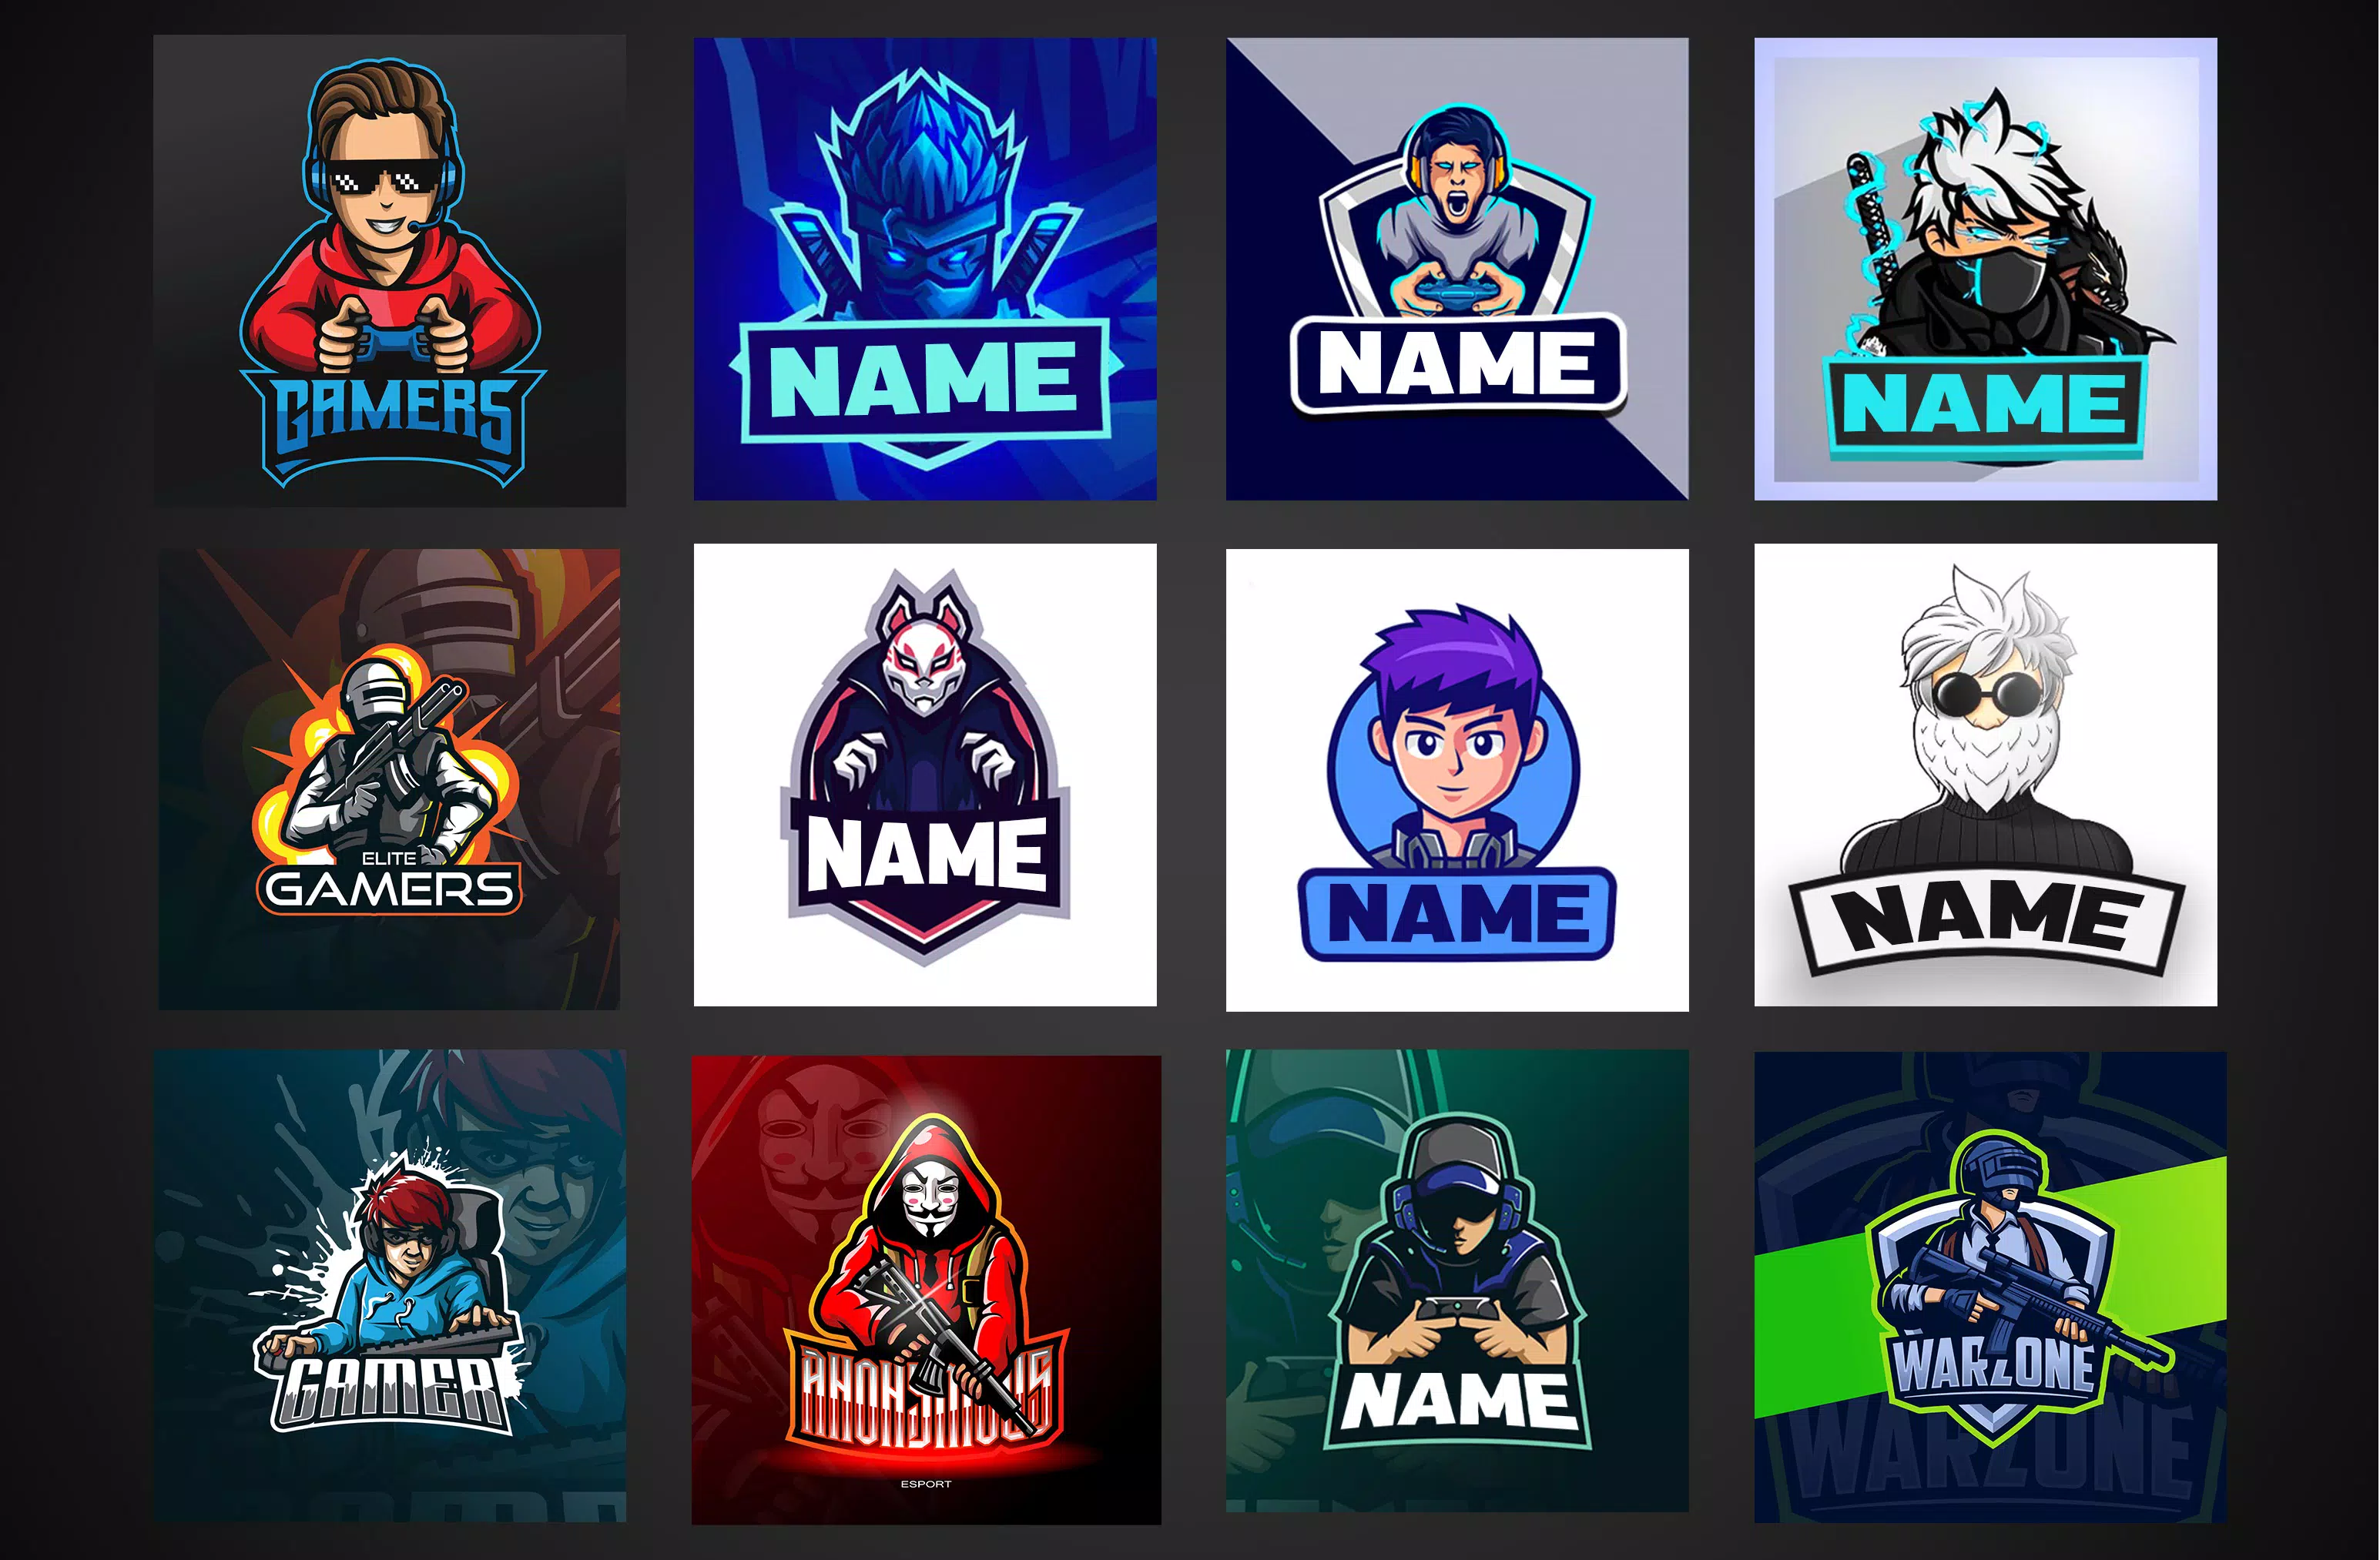 Video Gaming Clan Logo là sự lựa chọn tuyệt vời cho đội game thủ. Với nhiều mẫu logo đẹp và hiệu quả, bạn có thể tạo ra một logo độc đáo, thể hiện tính cách riêng của đội và tạo được sự nhận biết của cộng đồng.